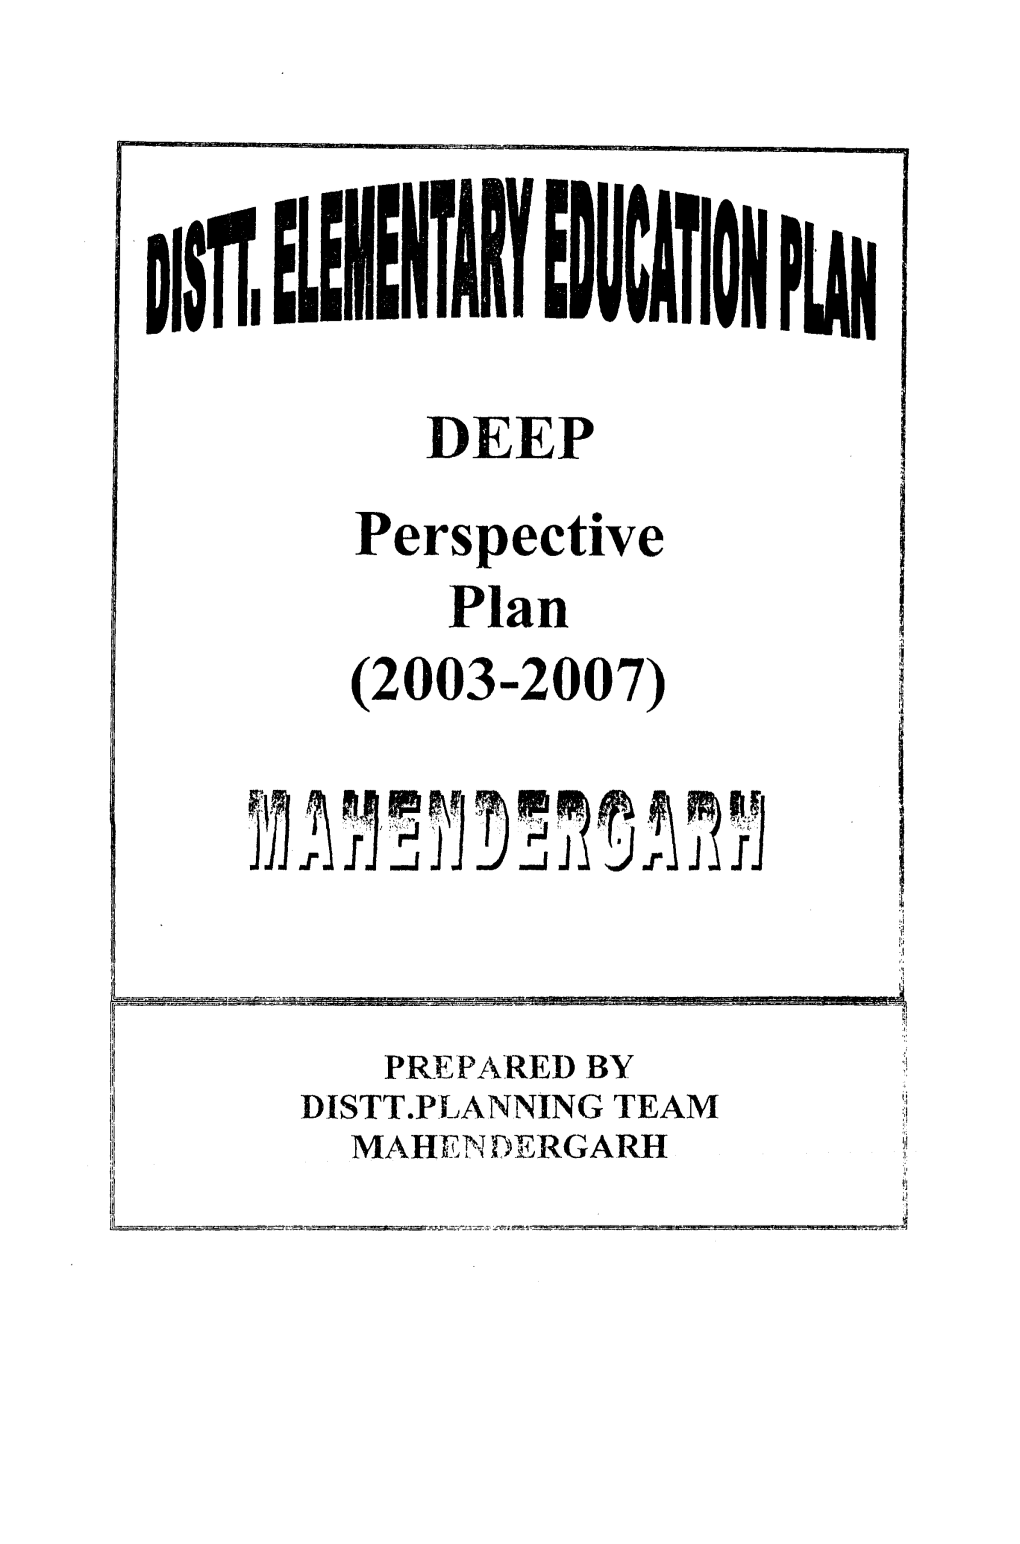 DEEP Perspective Plan (2003-2007)